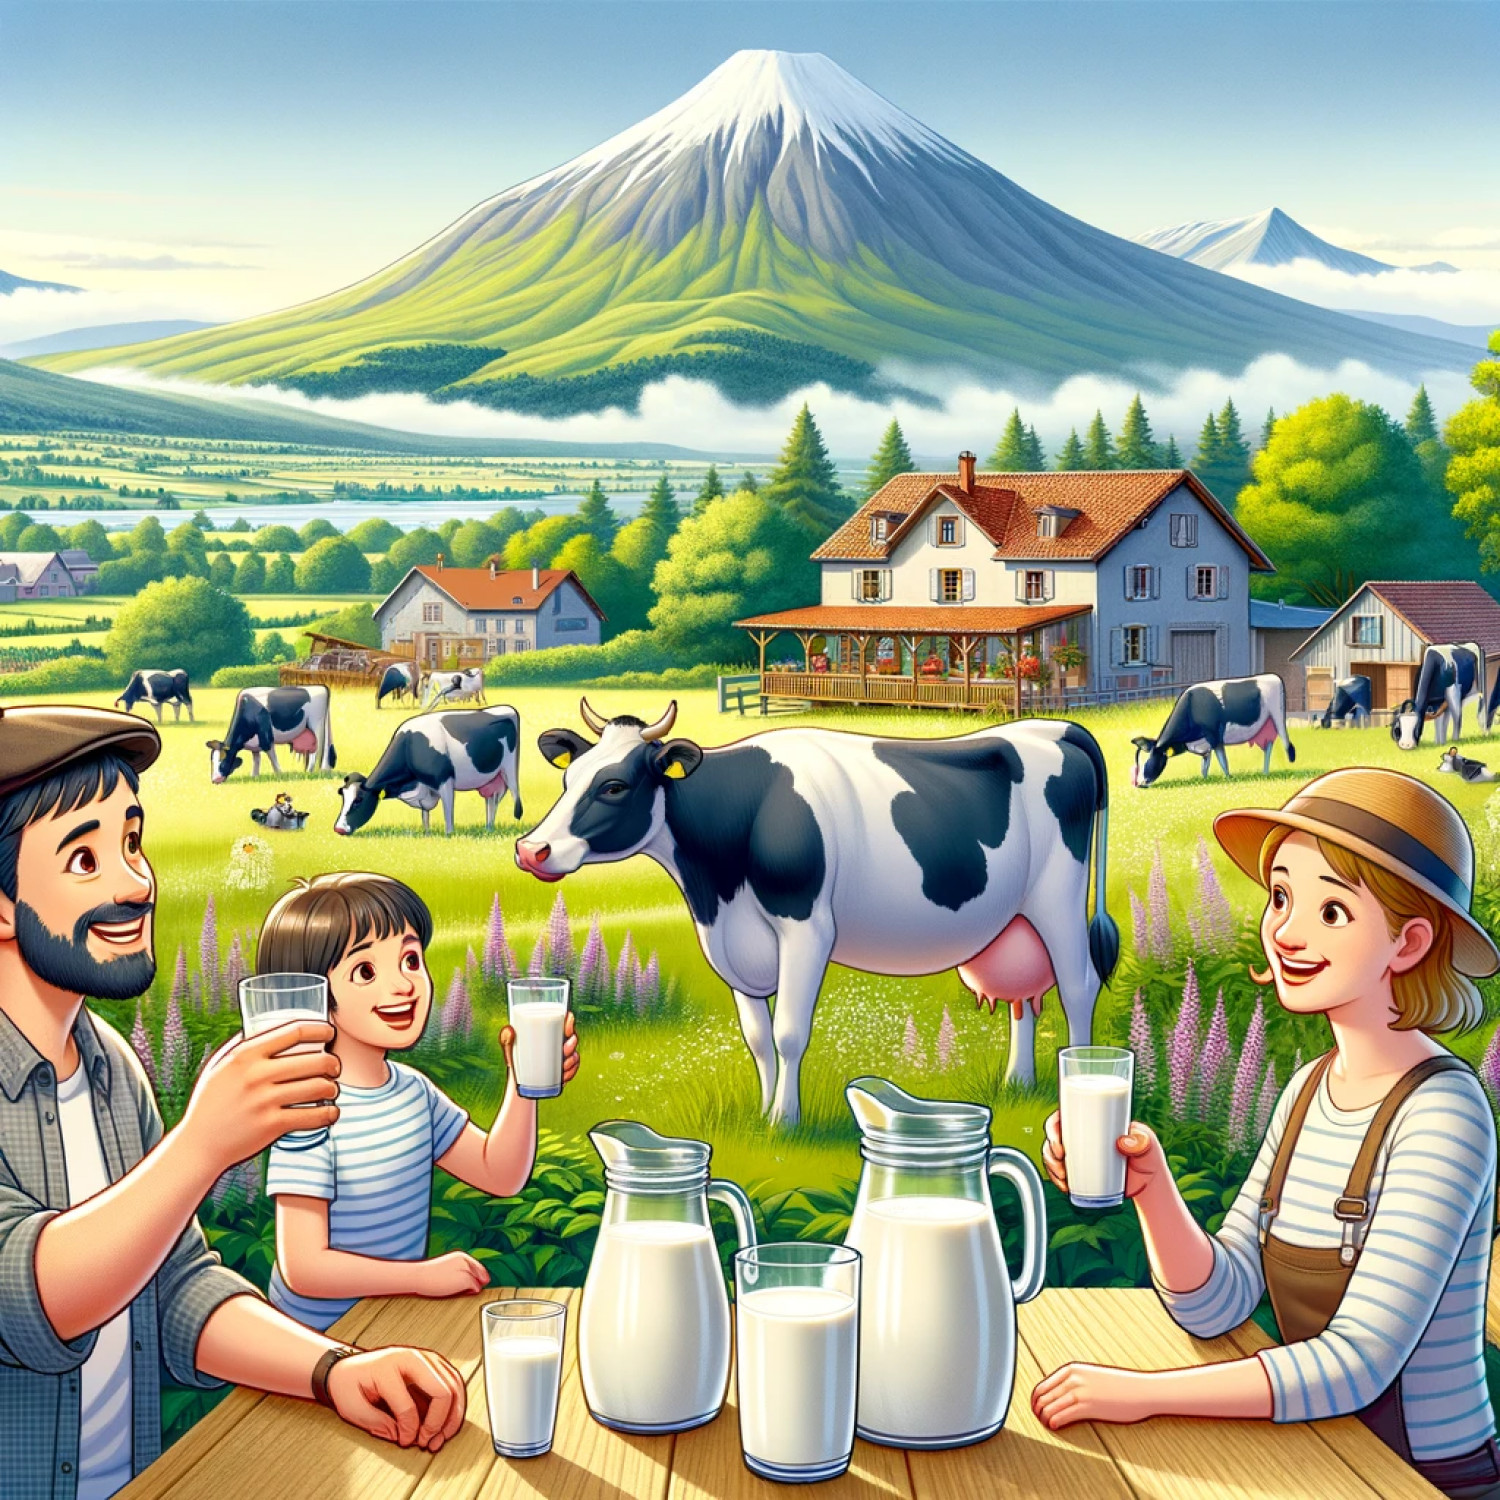 Comment produit-on du lait de manière plus durable ?